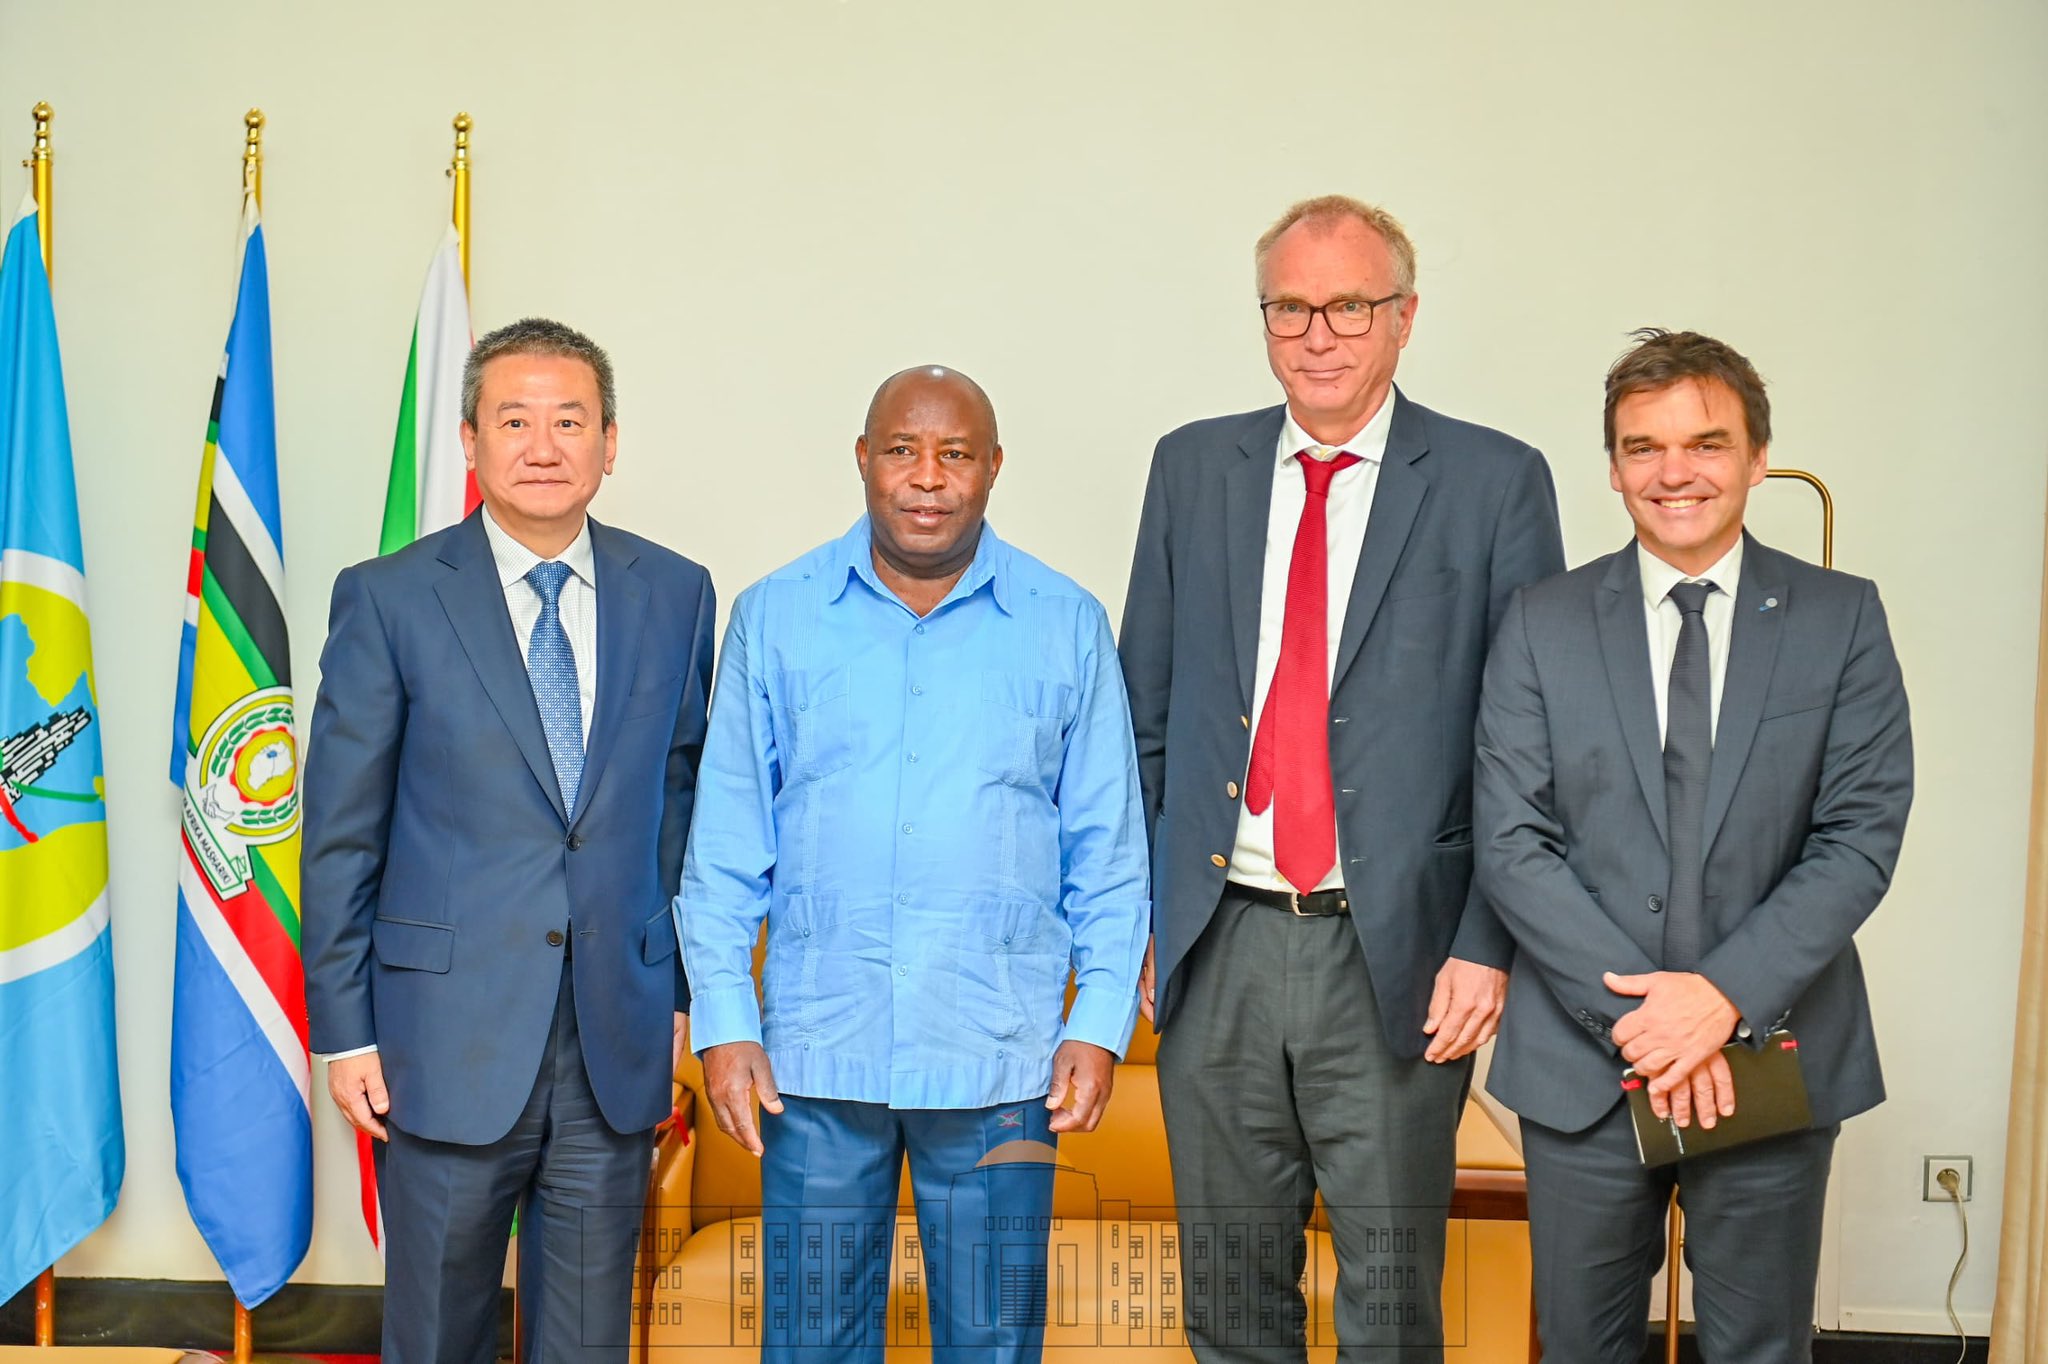 Le Président Ndayishimiye accorde une audience conjointe à l’Envoyé Spécial du Secrétaire Général des Nations Unies et à l’Ambassadeur Suisse au Burundi 